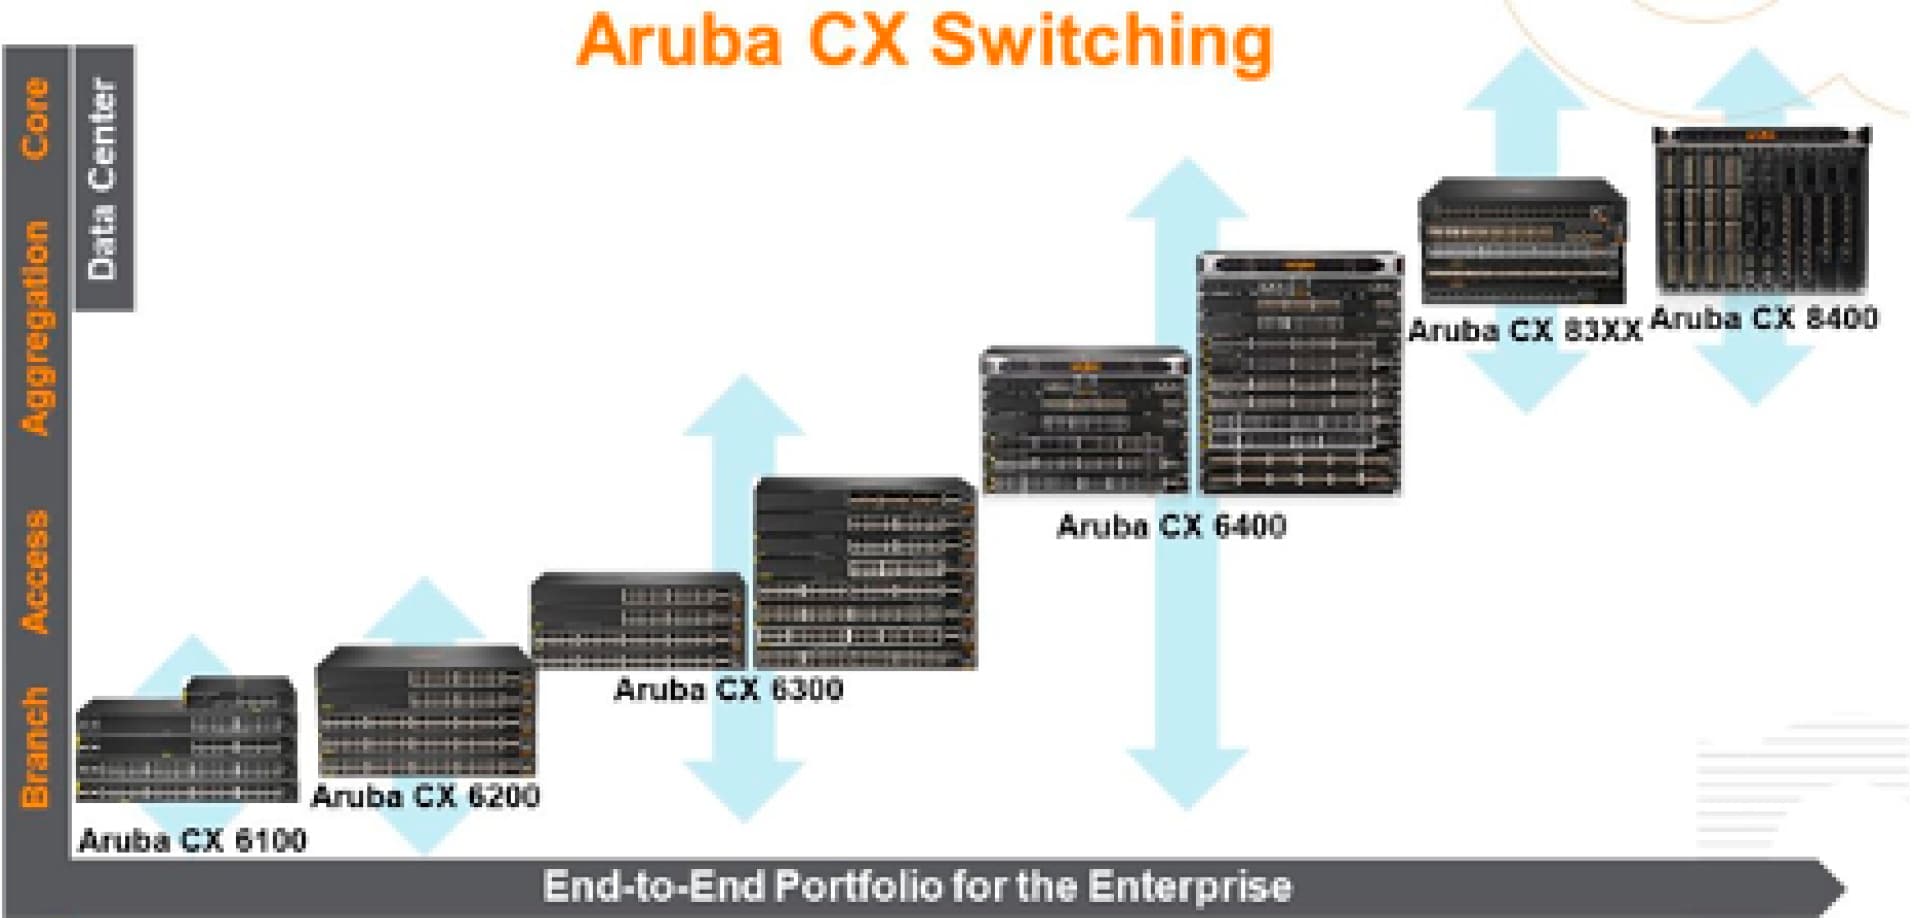 Aruba CX Switching